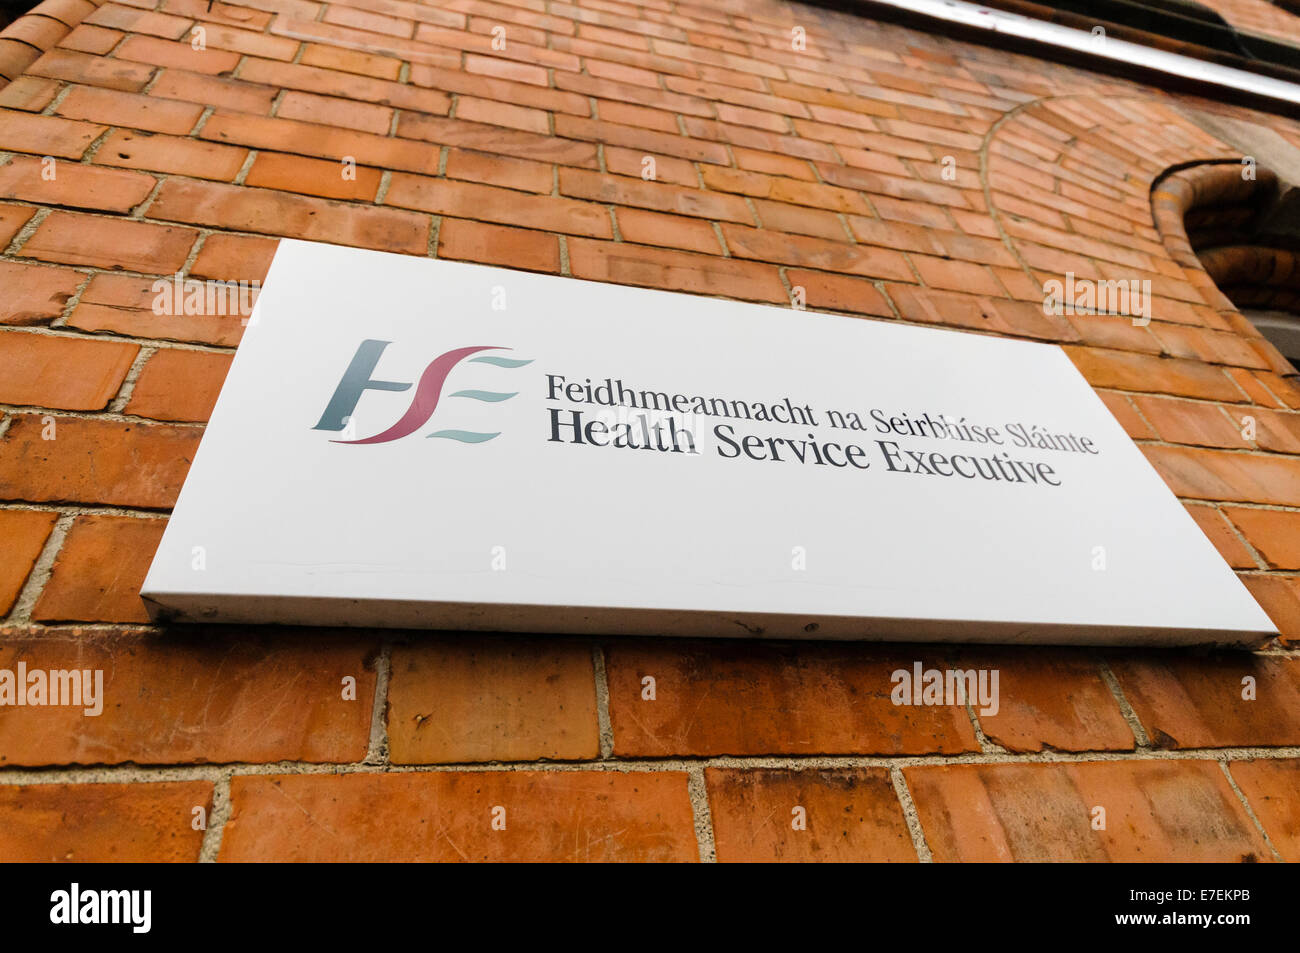 Anmeldung für die irische Health Service Executive (HSE) - Feidhmeannacht Na Seirbhíse Slàinte Stockfoto